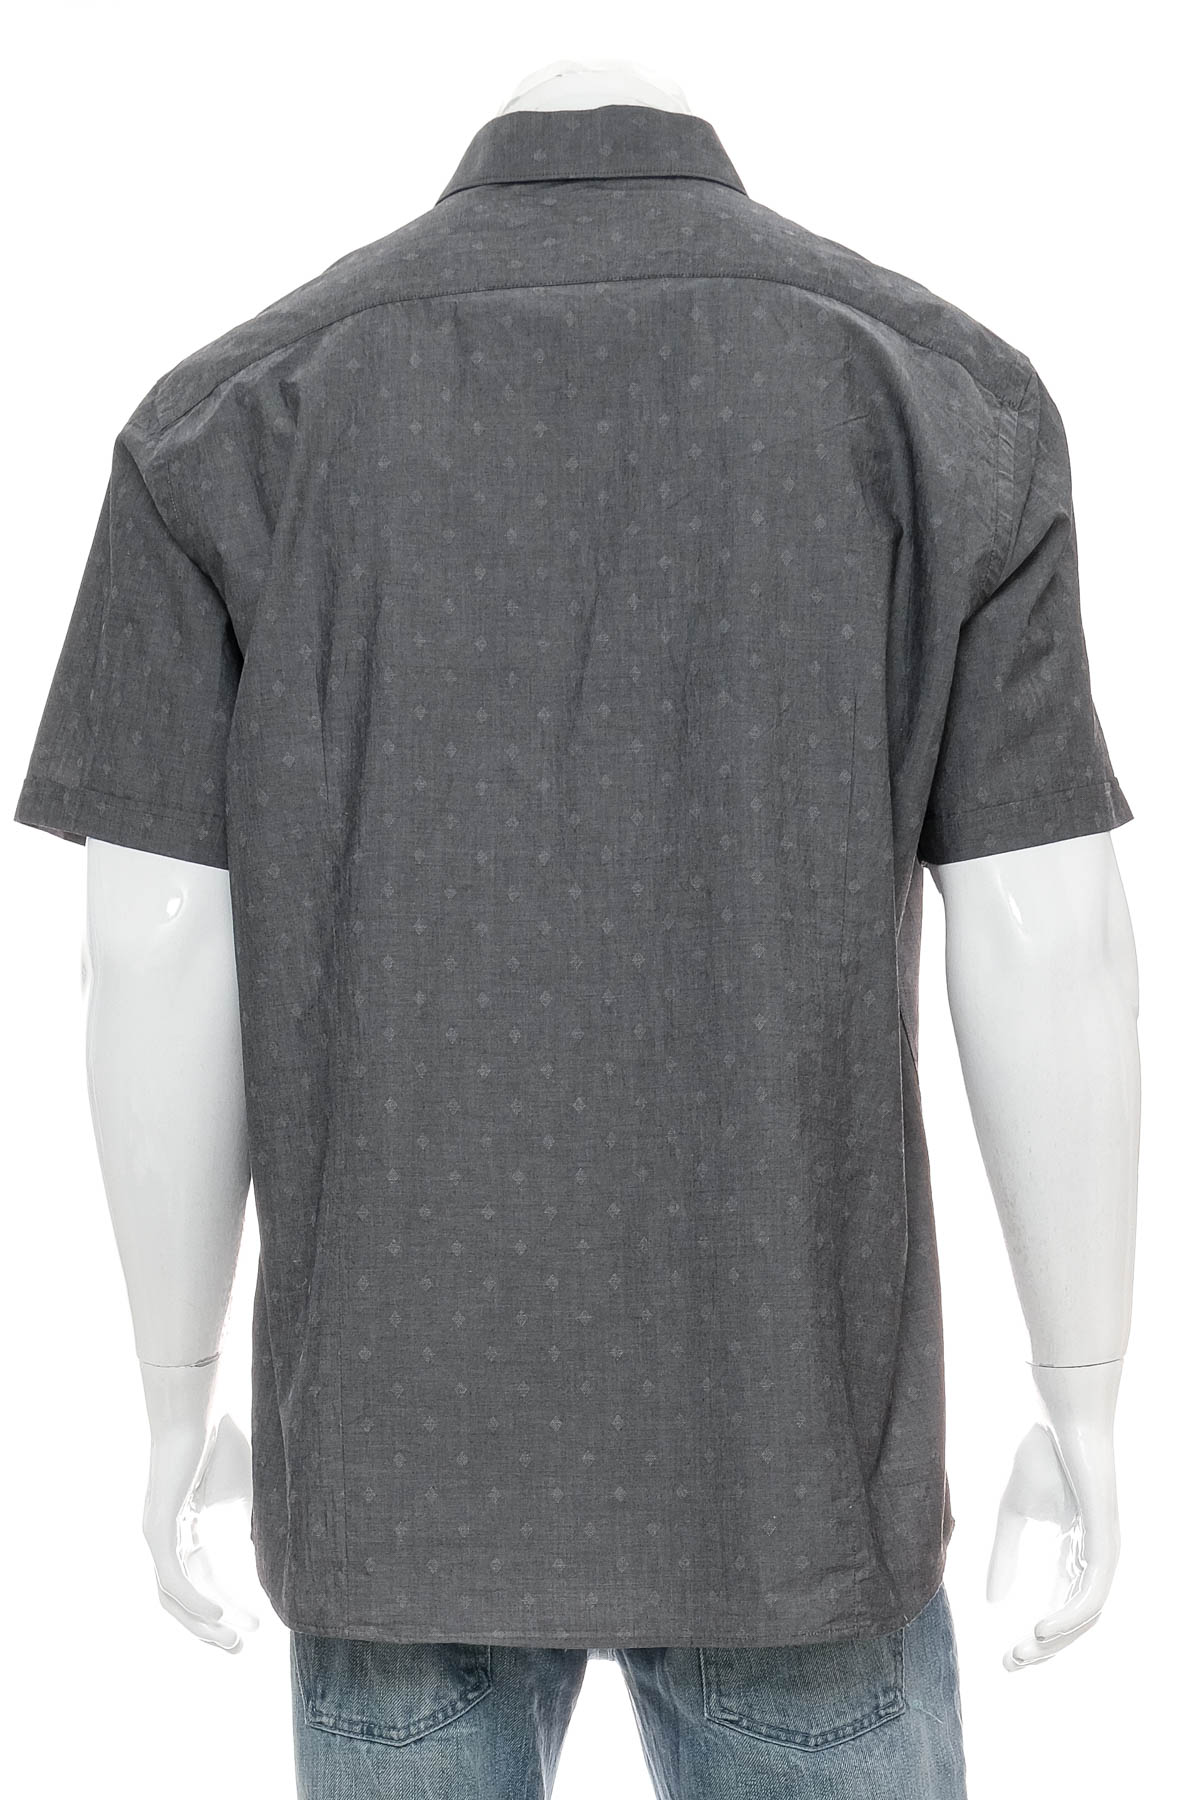 Ανδρικό πουκάμισο - Target - 1